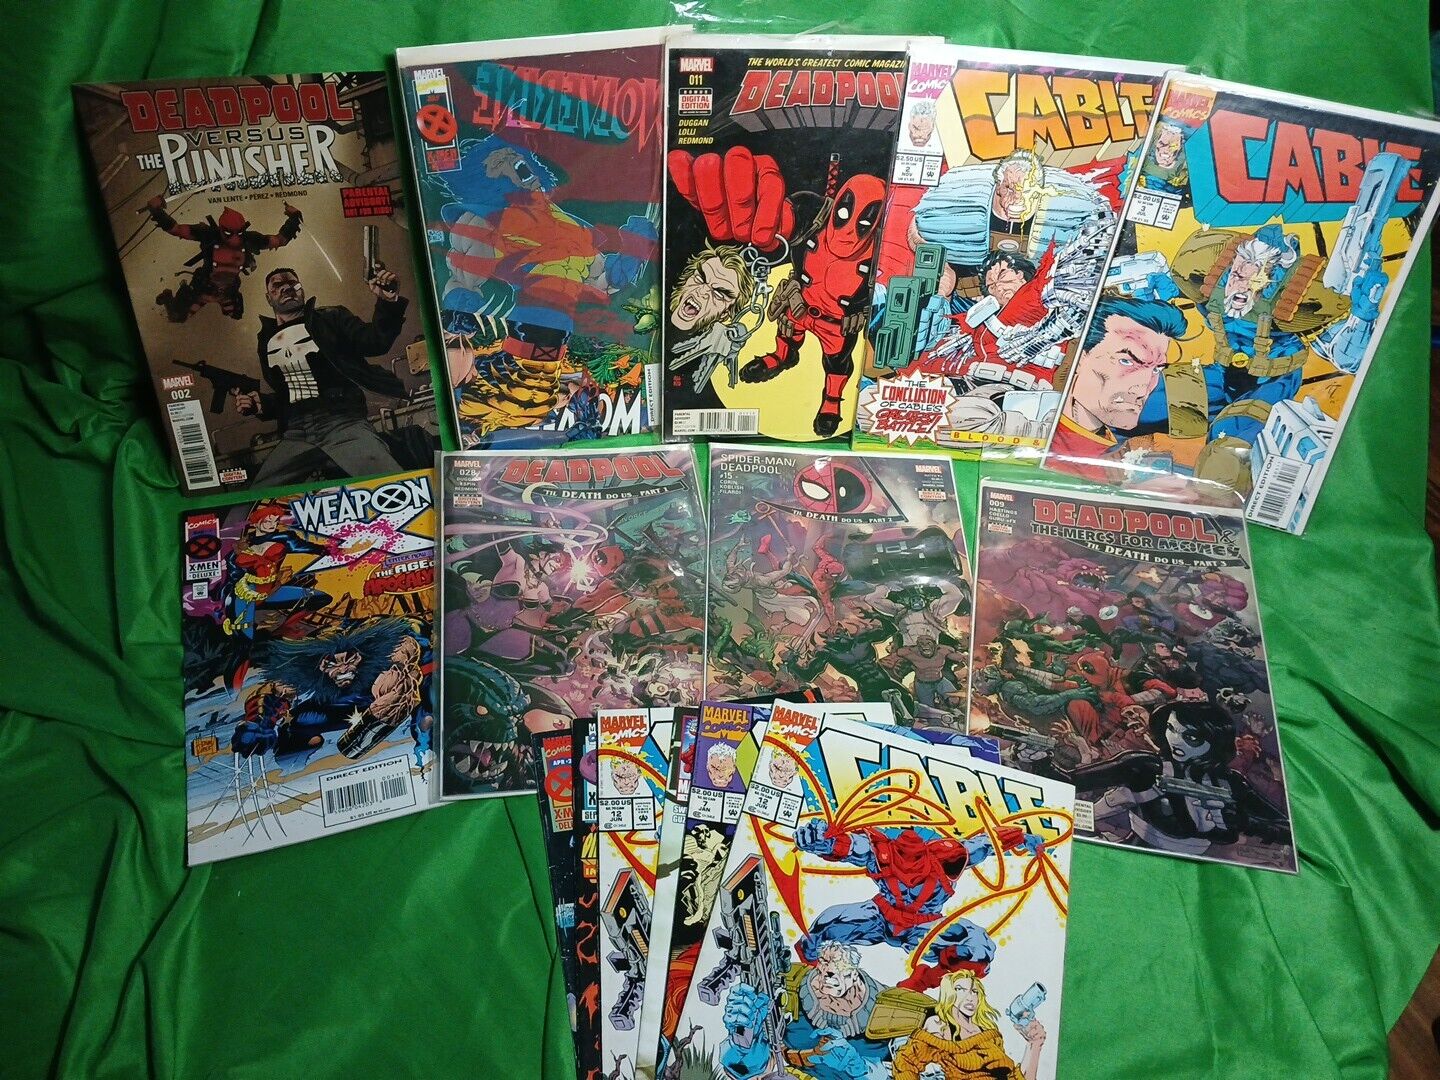 Marvel Deadpool/Wolverine/Cable Comic Lot Of 15 Til Death Do US Punisher Wpn X